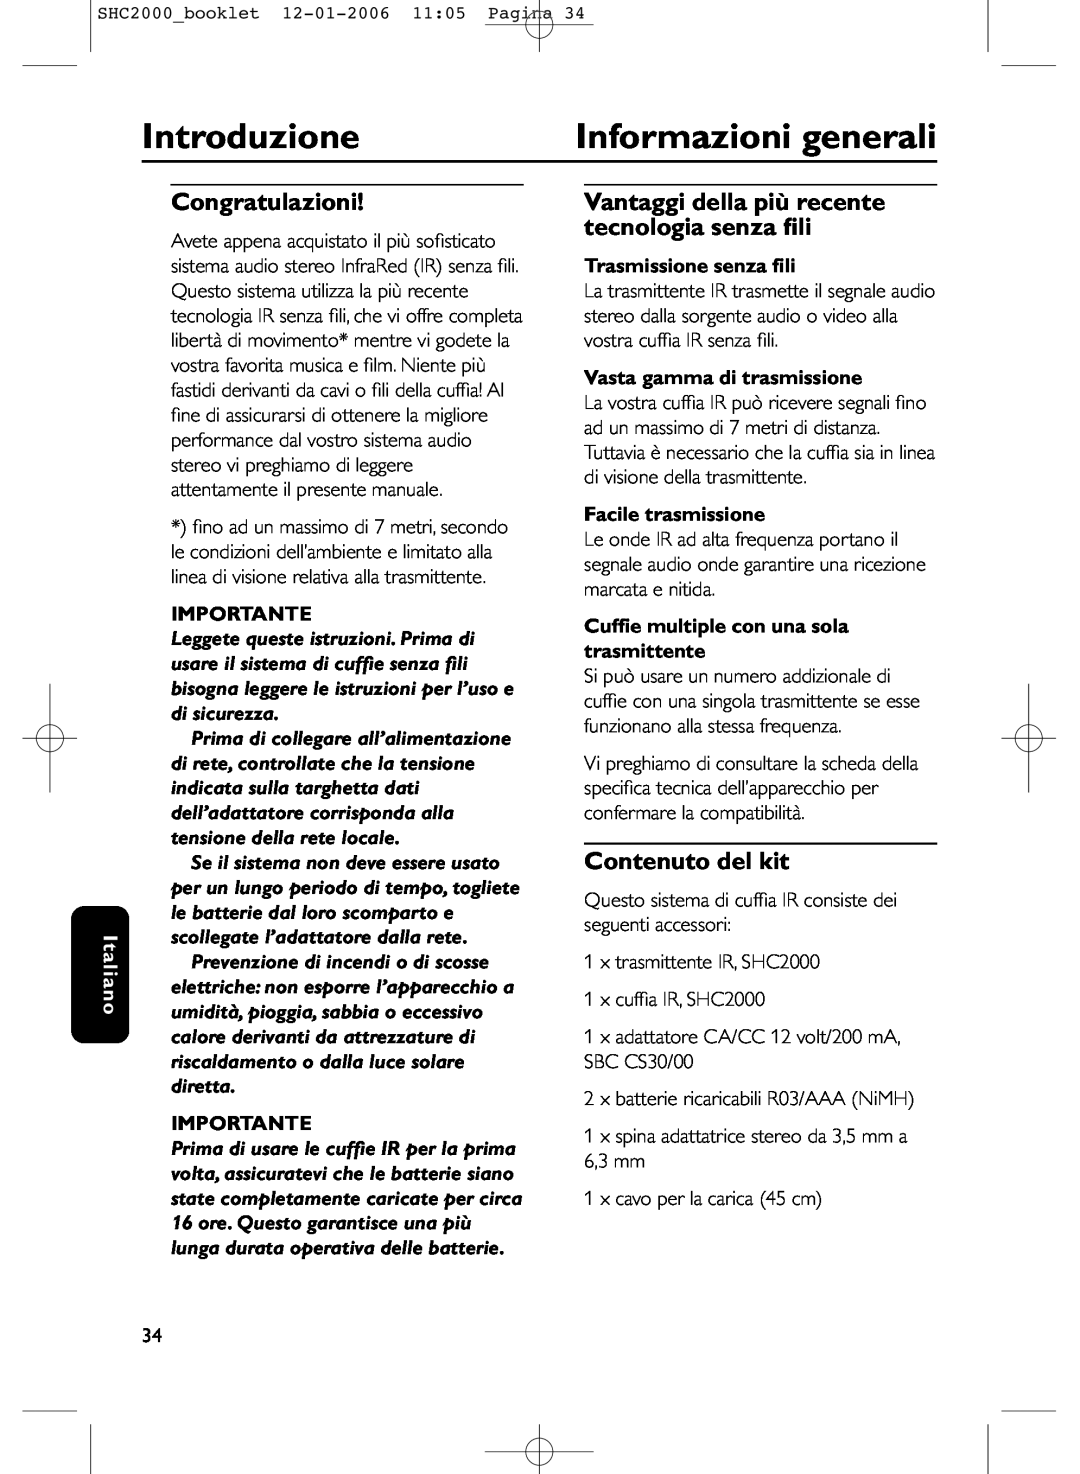 Philips SHC2000 manual Introduzione, Informazioni generali, Congratulazioni, Contenuto del kit, Italiano, Importante 